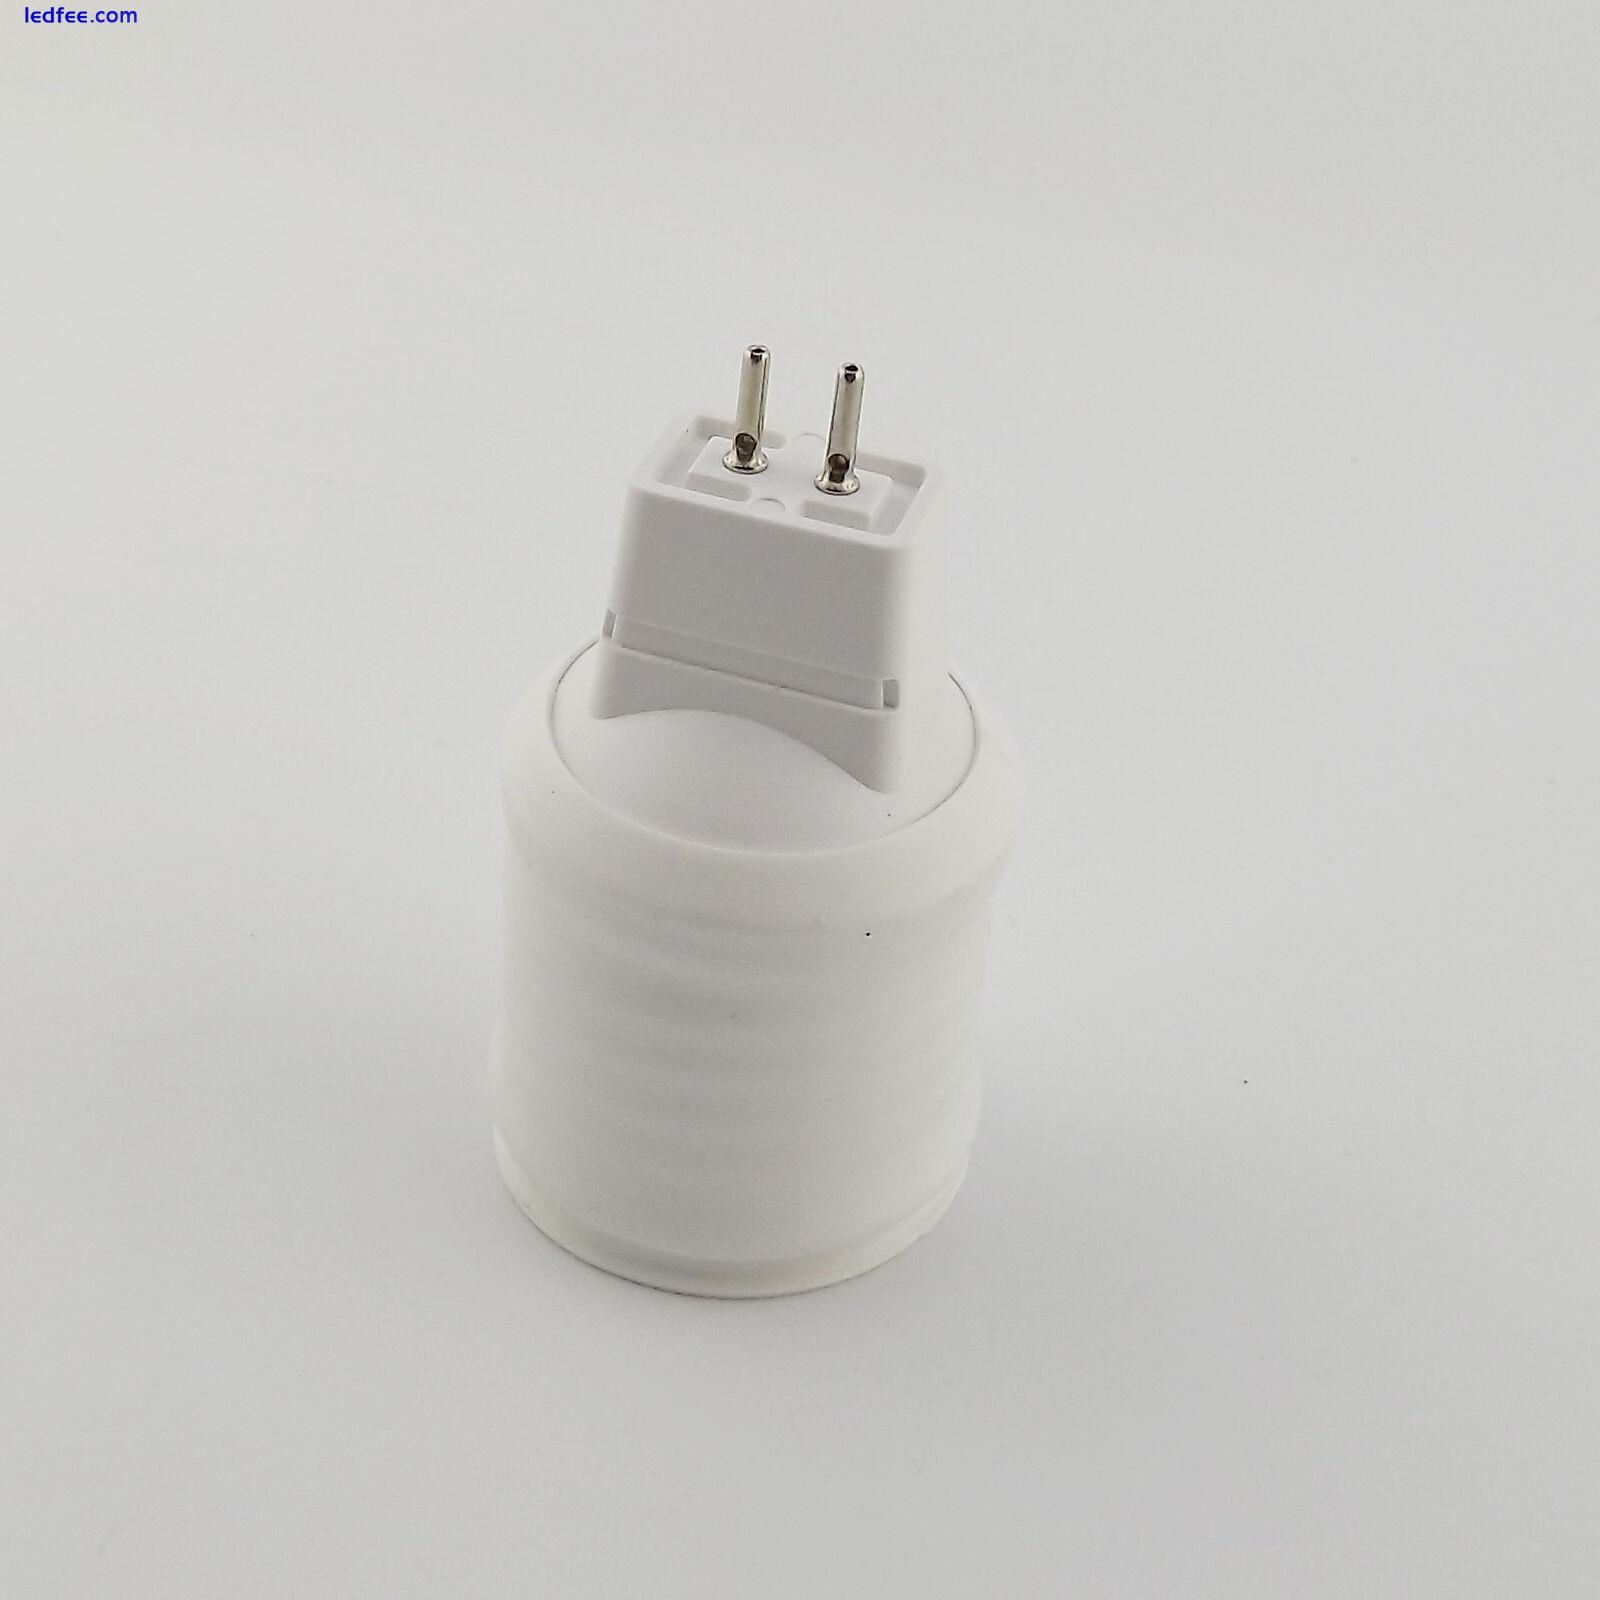 MR16 to E27 Screw Thread LED Halogen CFL Light Bulb Lamp Socket Convert Holder 1 